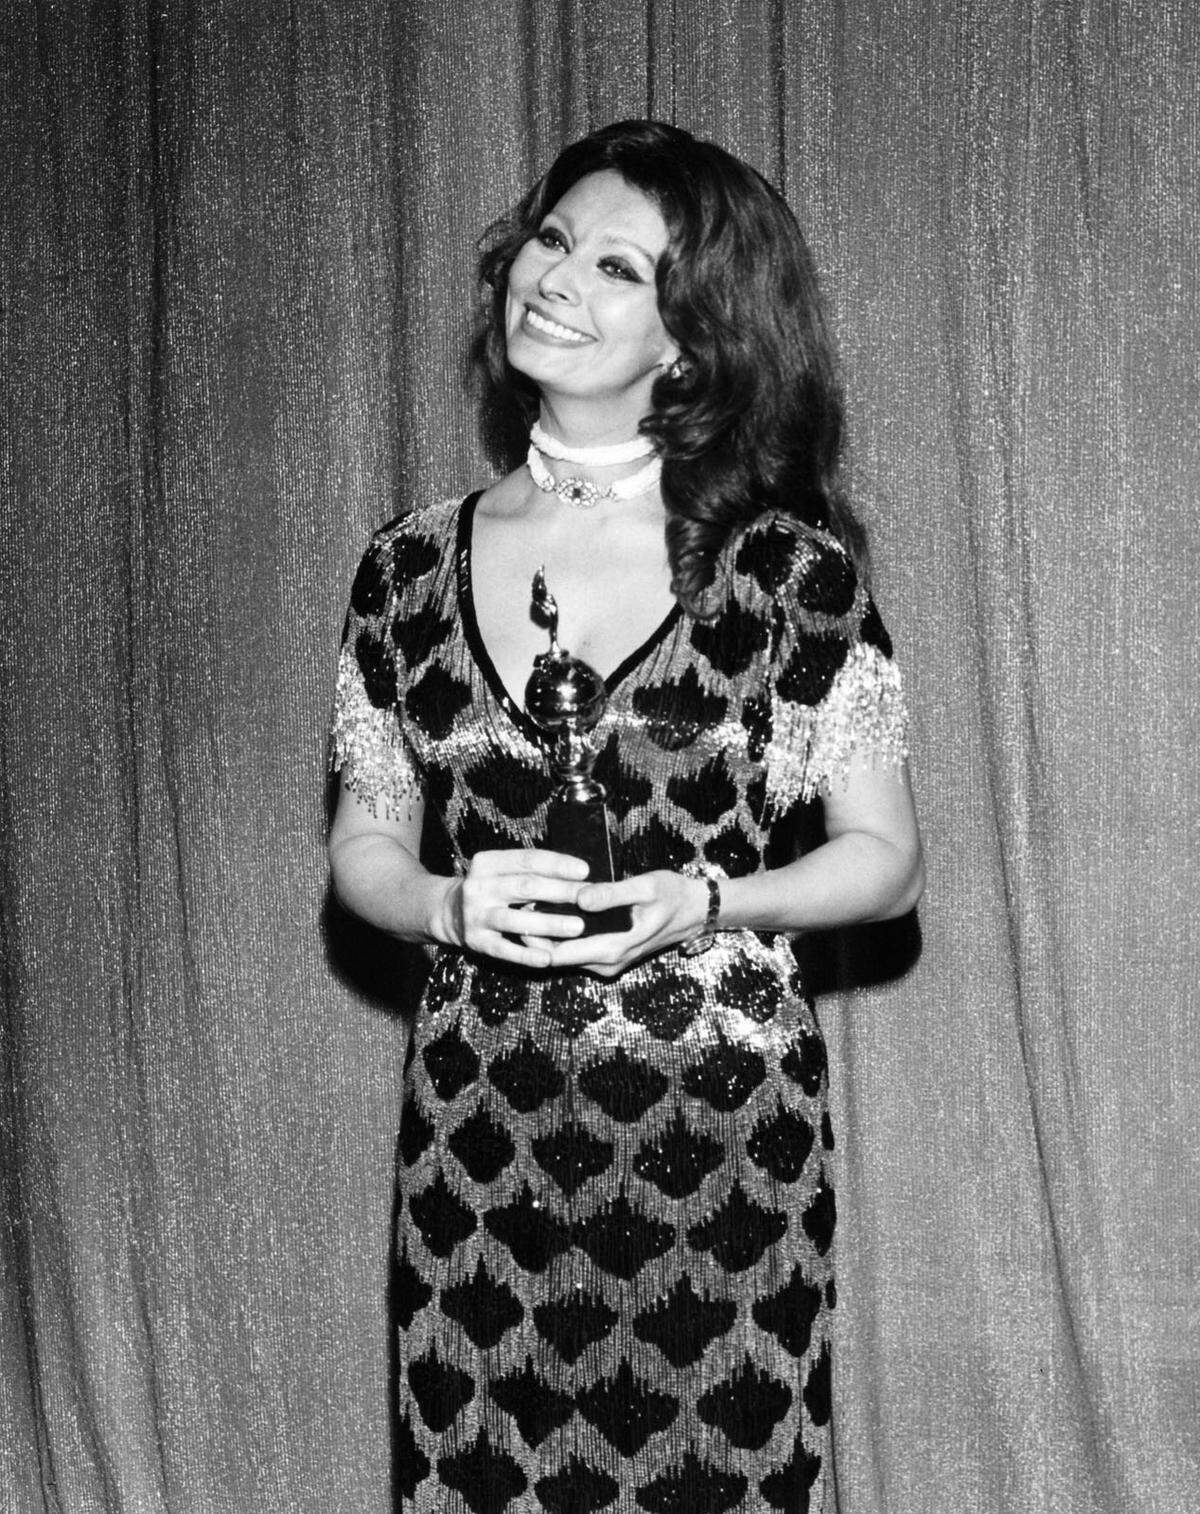 Sophia Loren, ob 1977 oder 2018, diese Diva ist zeitlos, deshalb modelte sie mit 81 Jahren auch noch für Dolce & Gabbana. Sie wurde viermal als beliebteste Darstellerin des Jahres 1964, 1965, 1969 und 1977 ausgezeichnet.